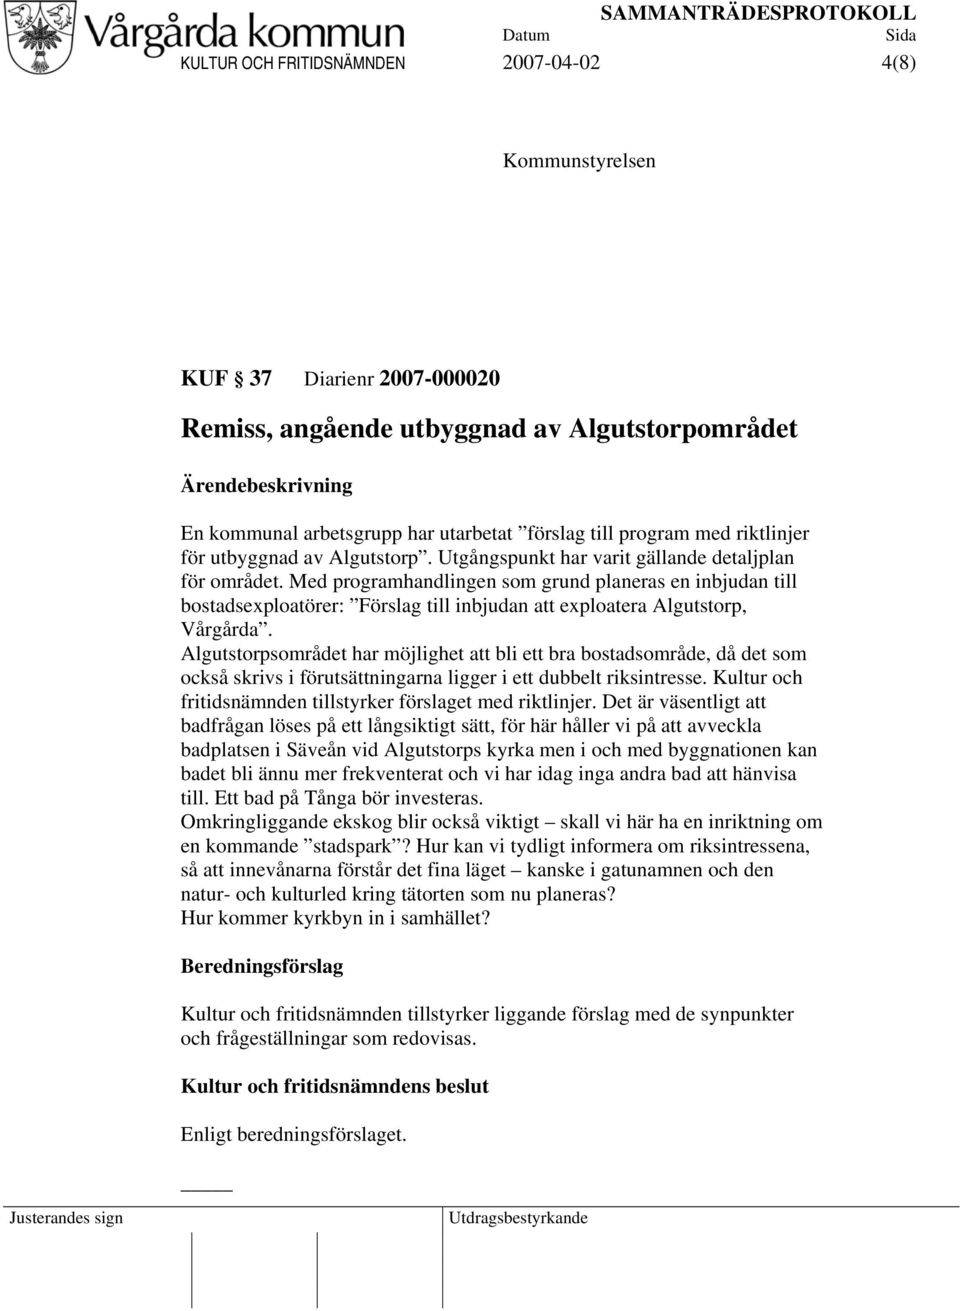 Med programhandlingen som grund planeras en inbjudan till bostadsexploatörer: Förslag till inbjudan att exploatera Algutstorp, Vårgårda.